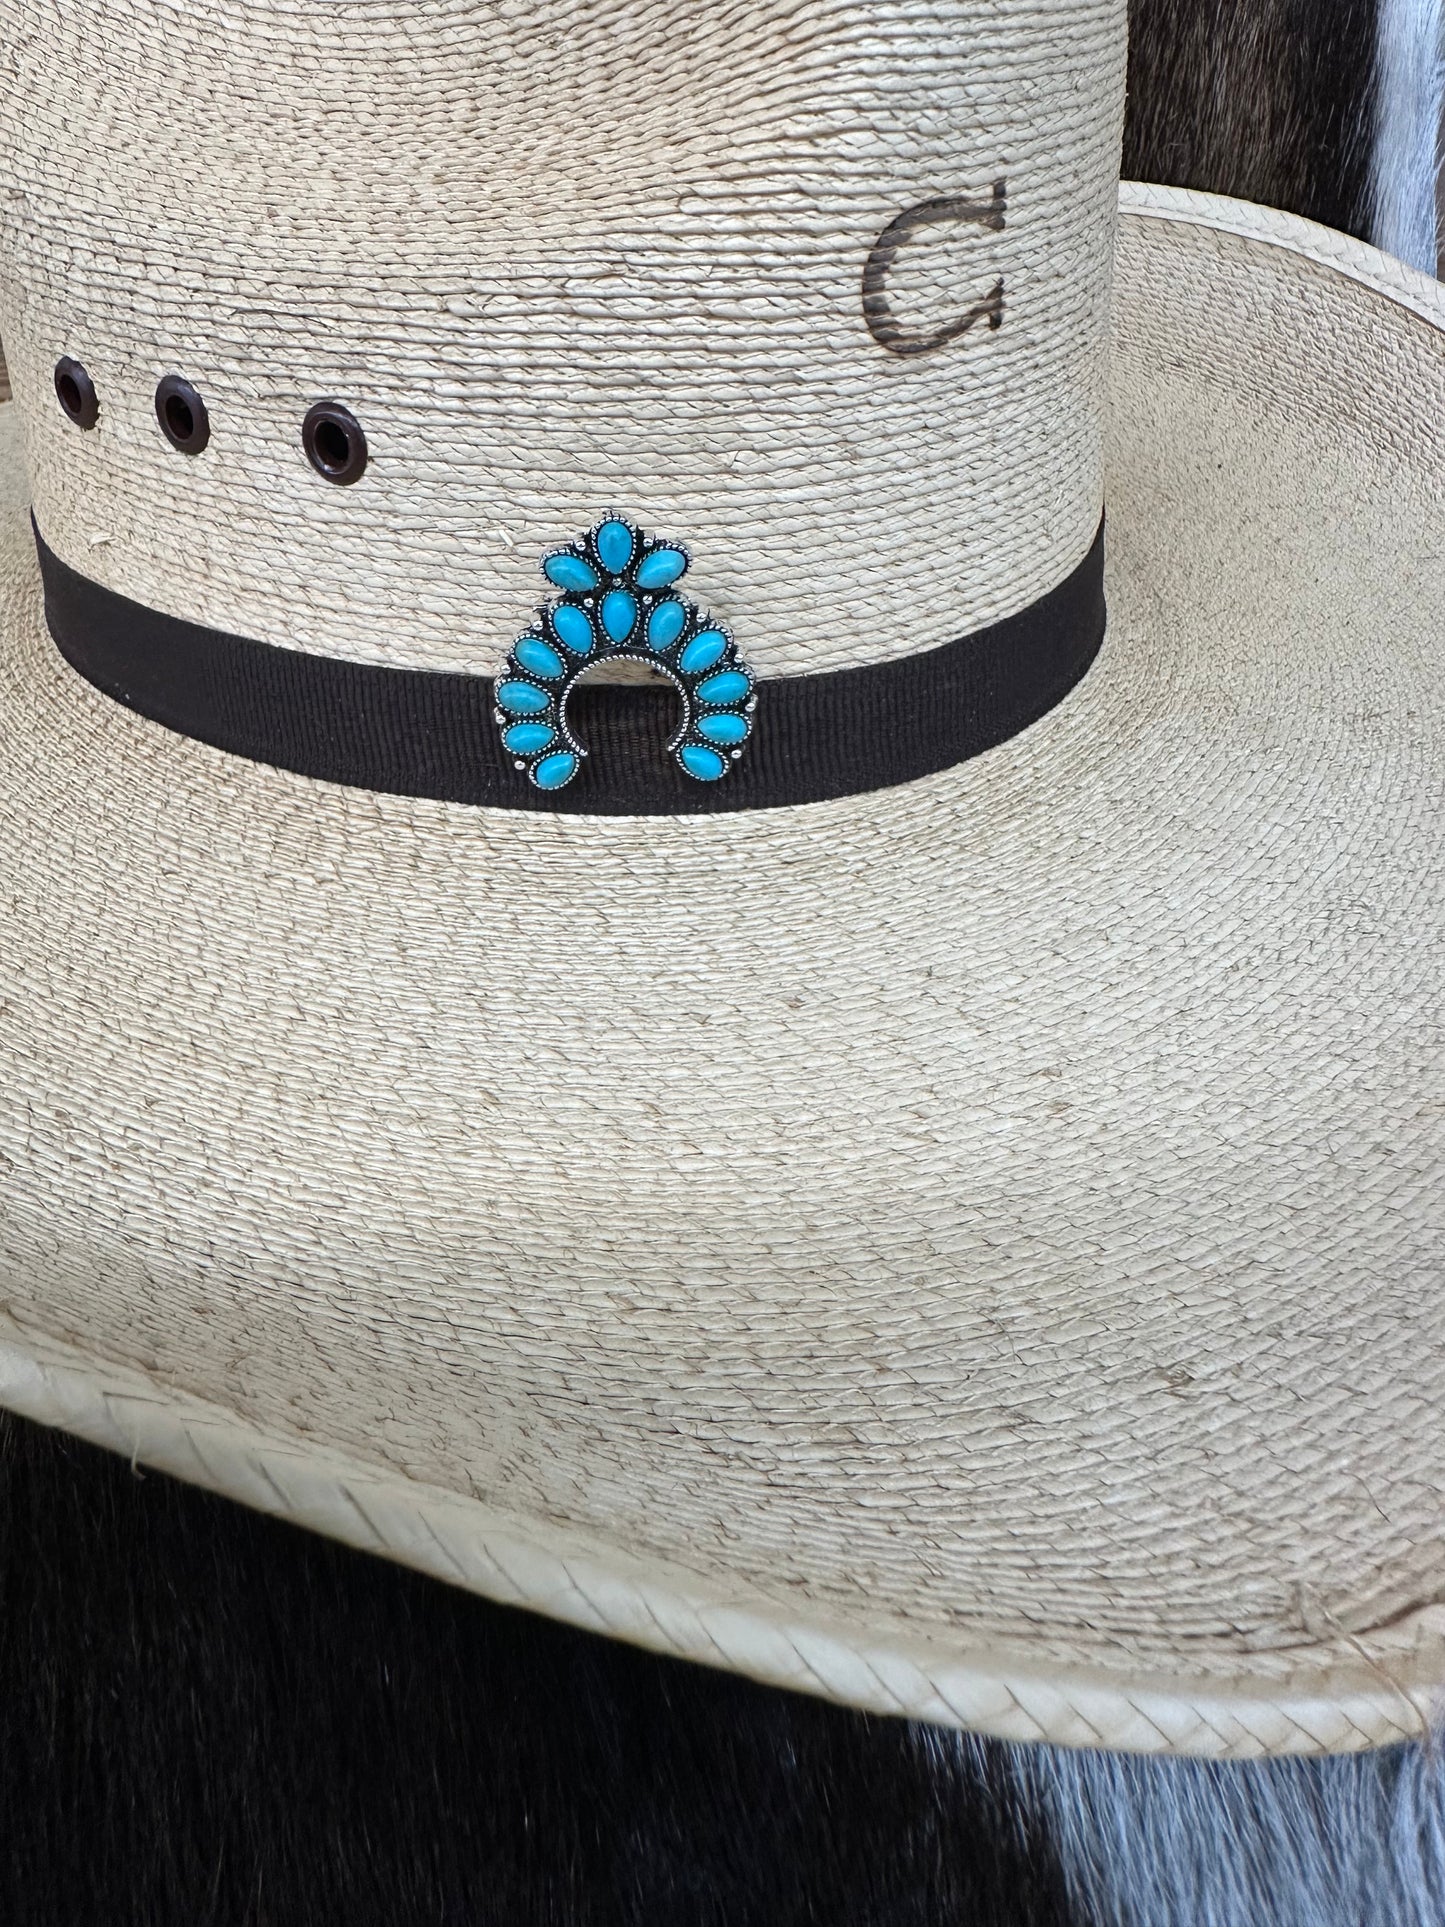 The Naja Hat Pin